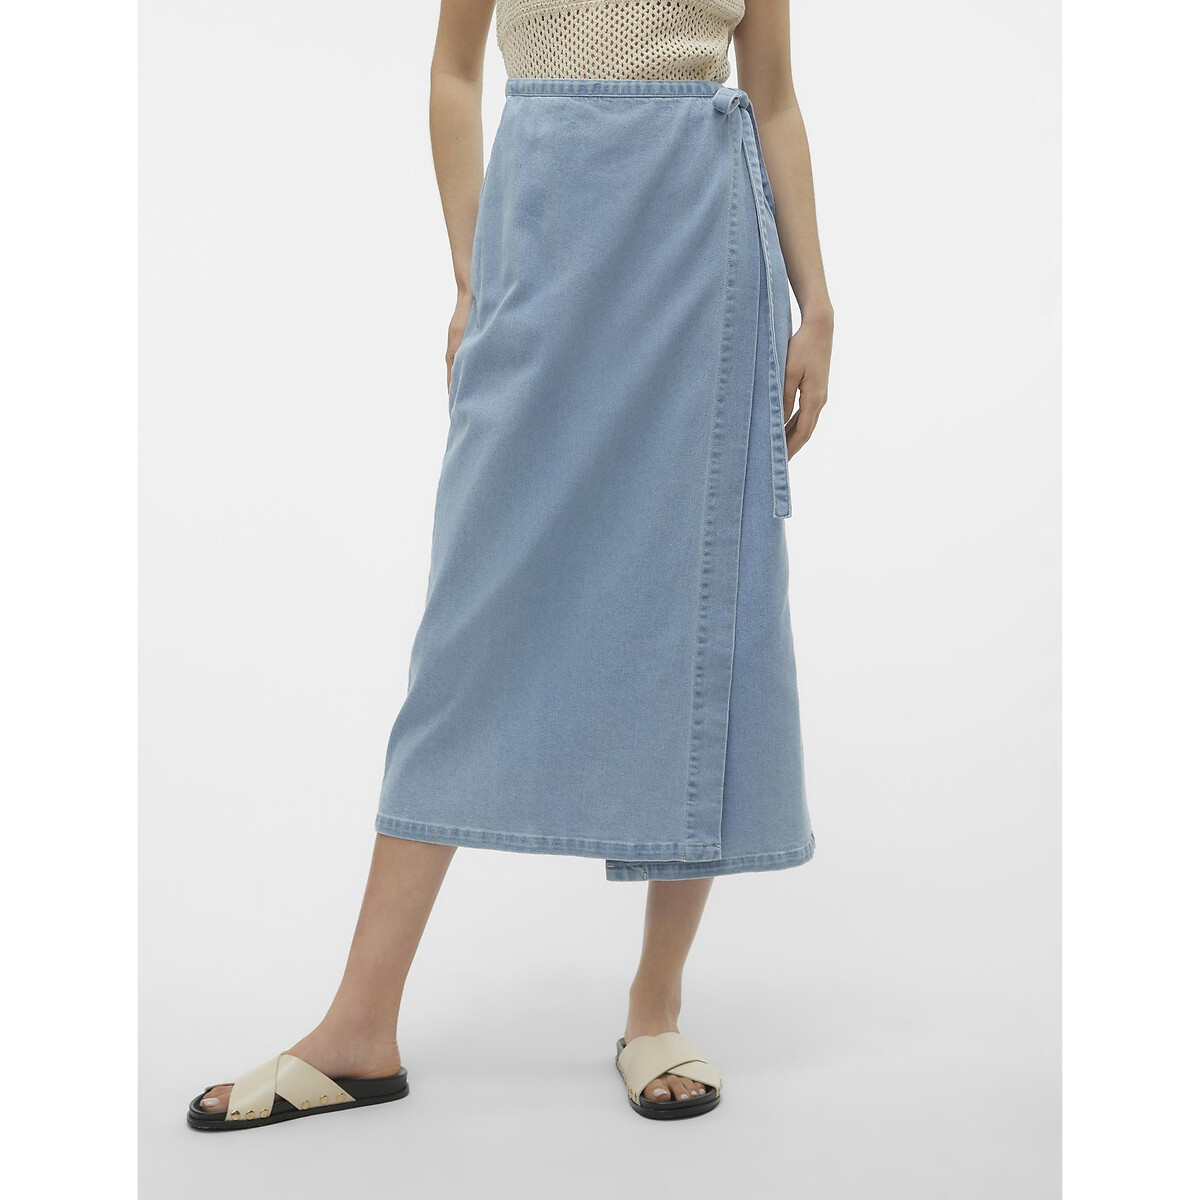 юбка laredoute юбка короткая из джинсовой ткани s синий Юбка с запахом из джинсовой ткани XL синий